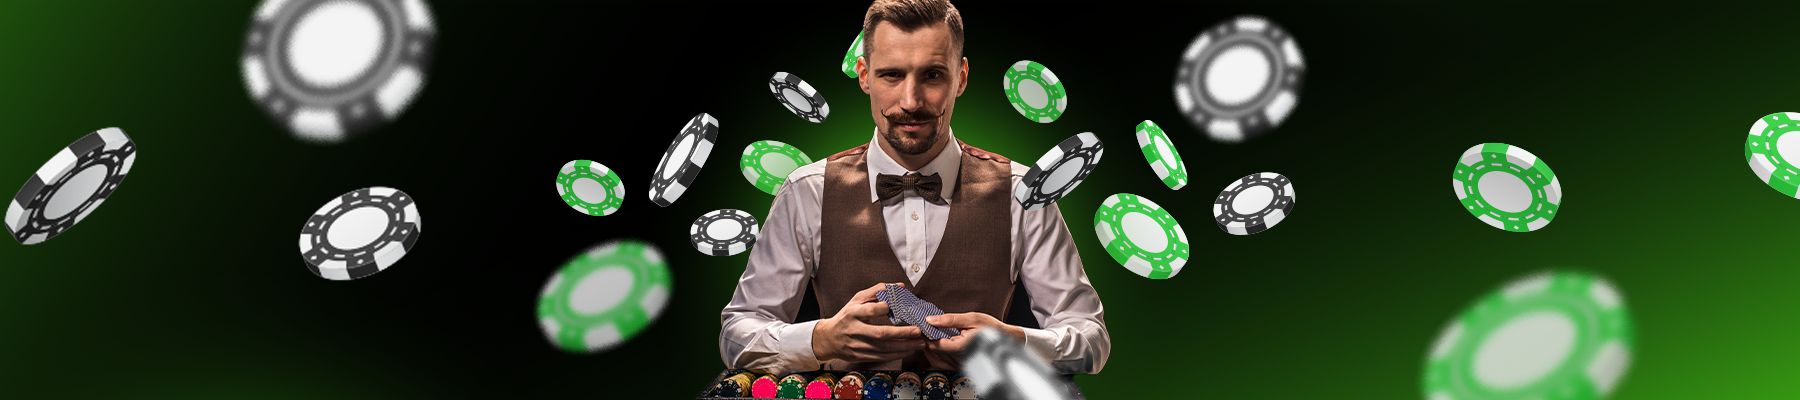 Популярные виды покера и правила игры в Покер